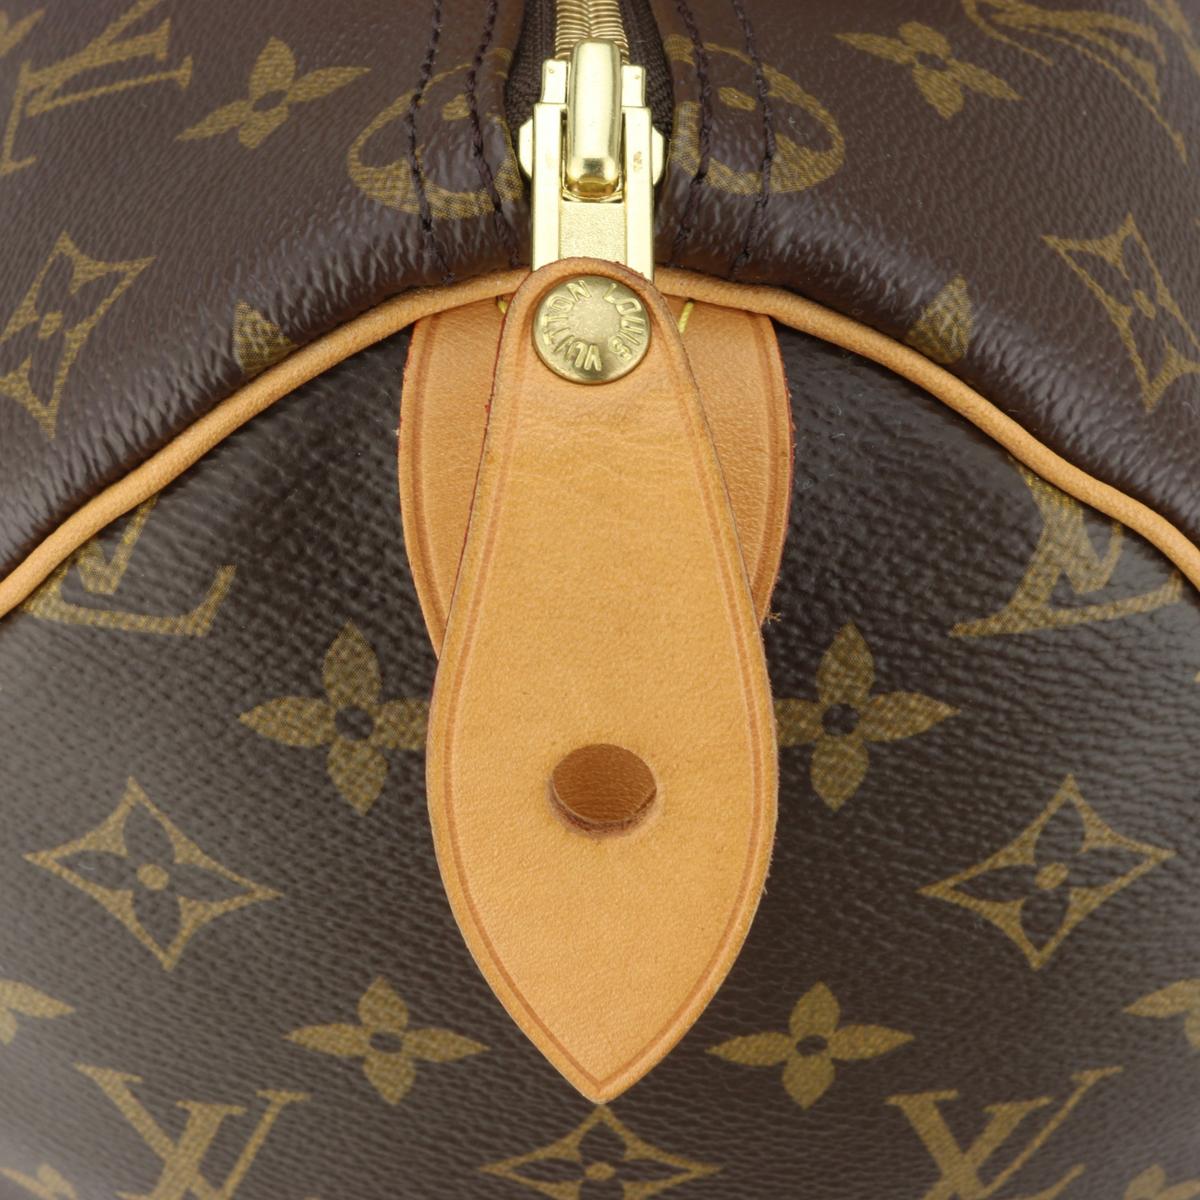 Louis Vuitton Speedy 35 Bag in Monogram 2018 10